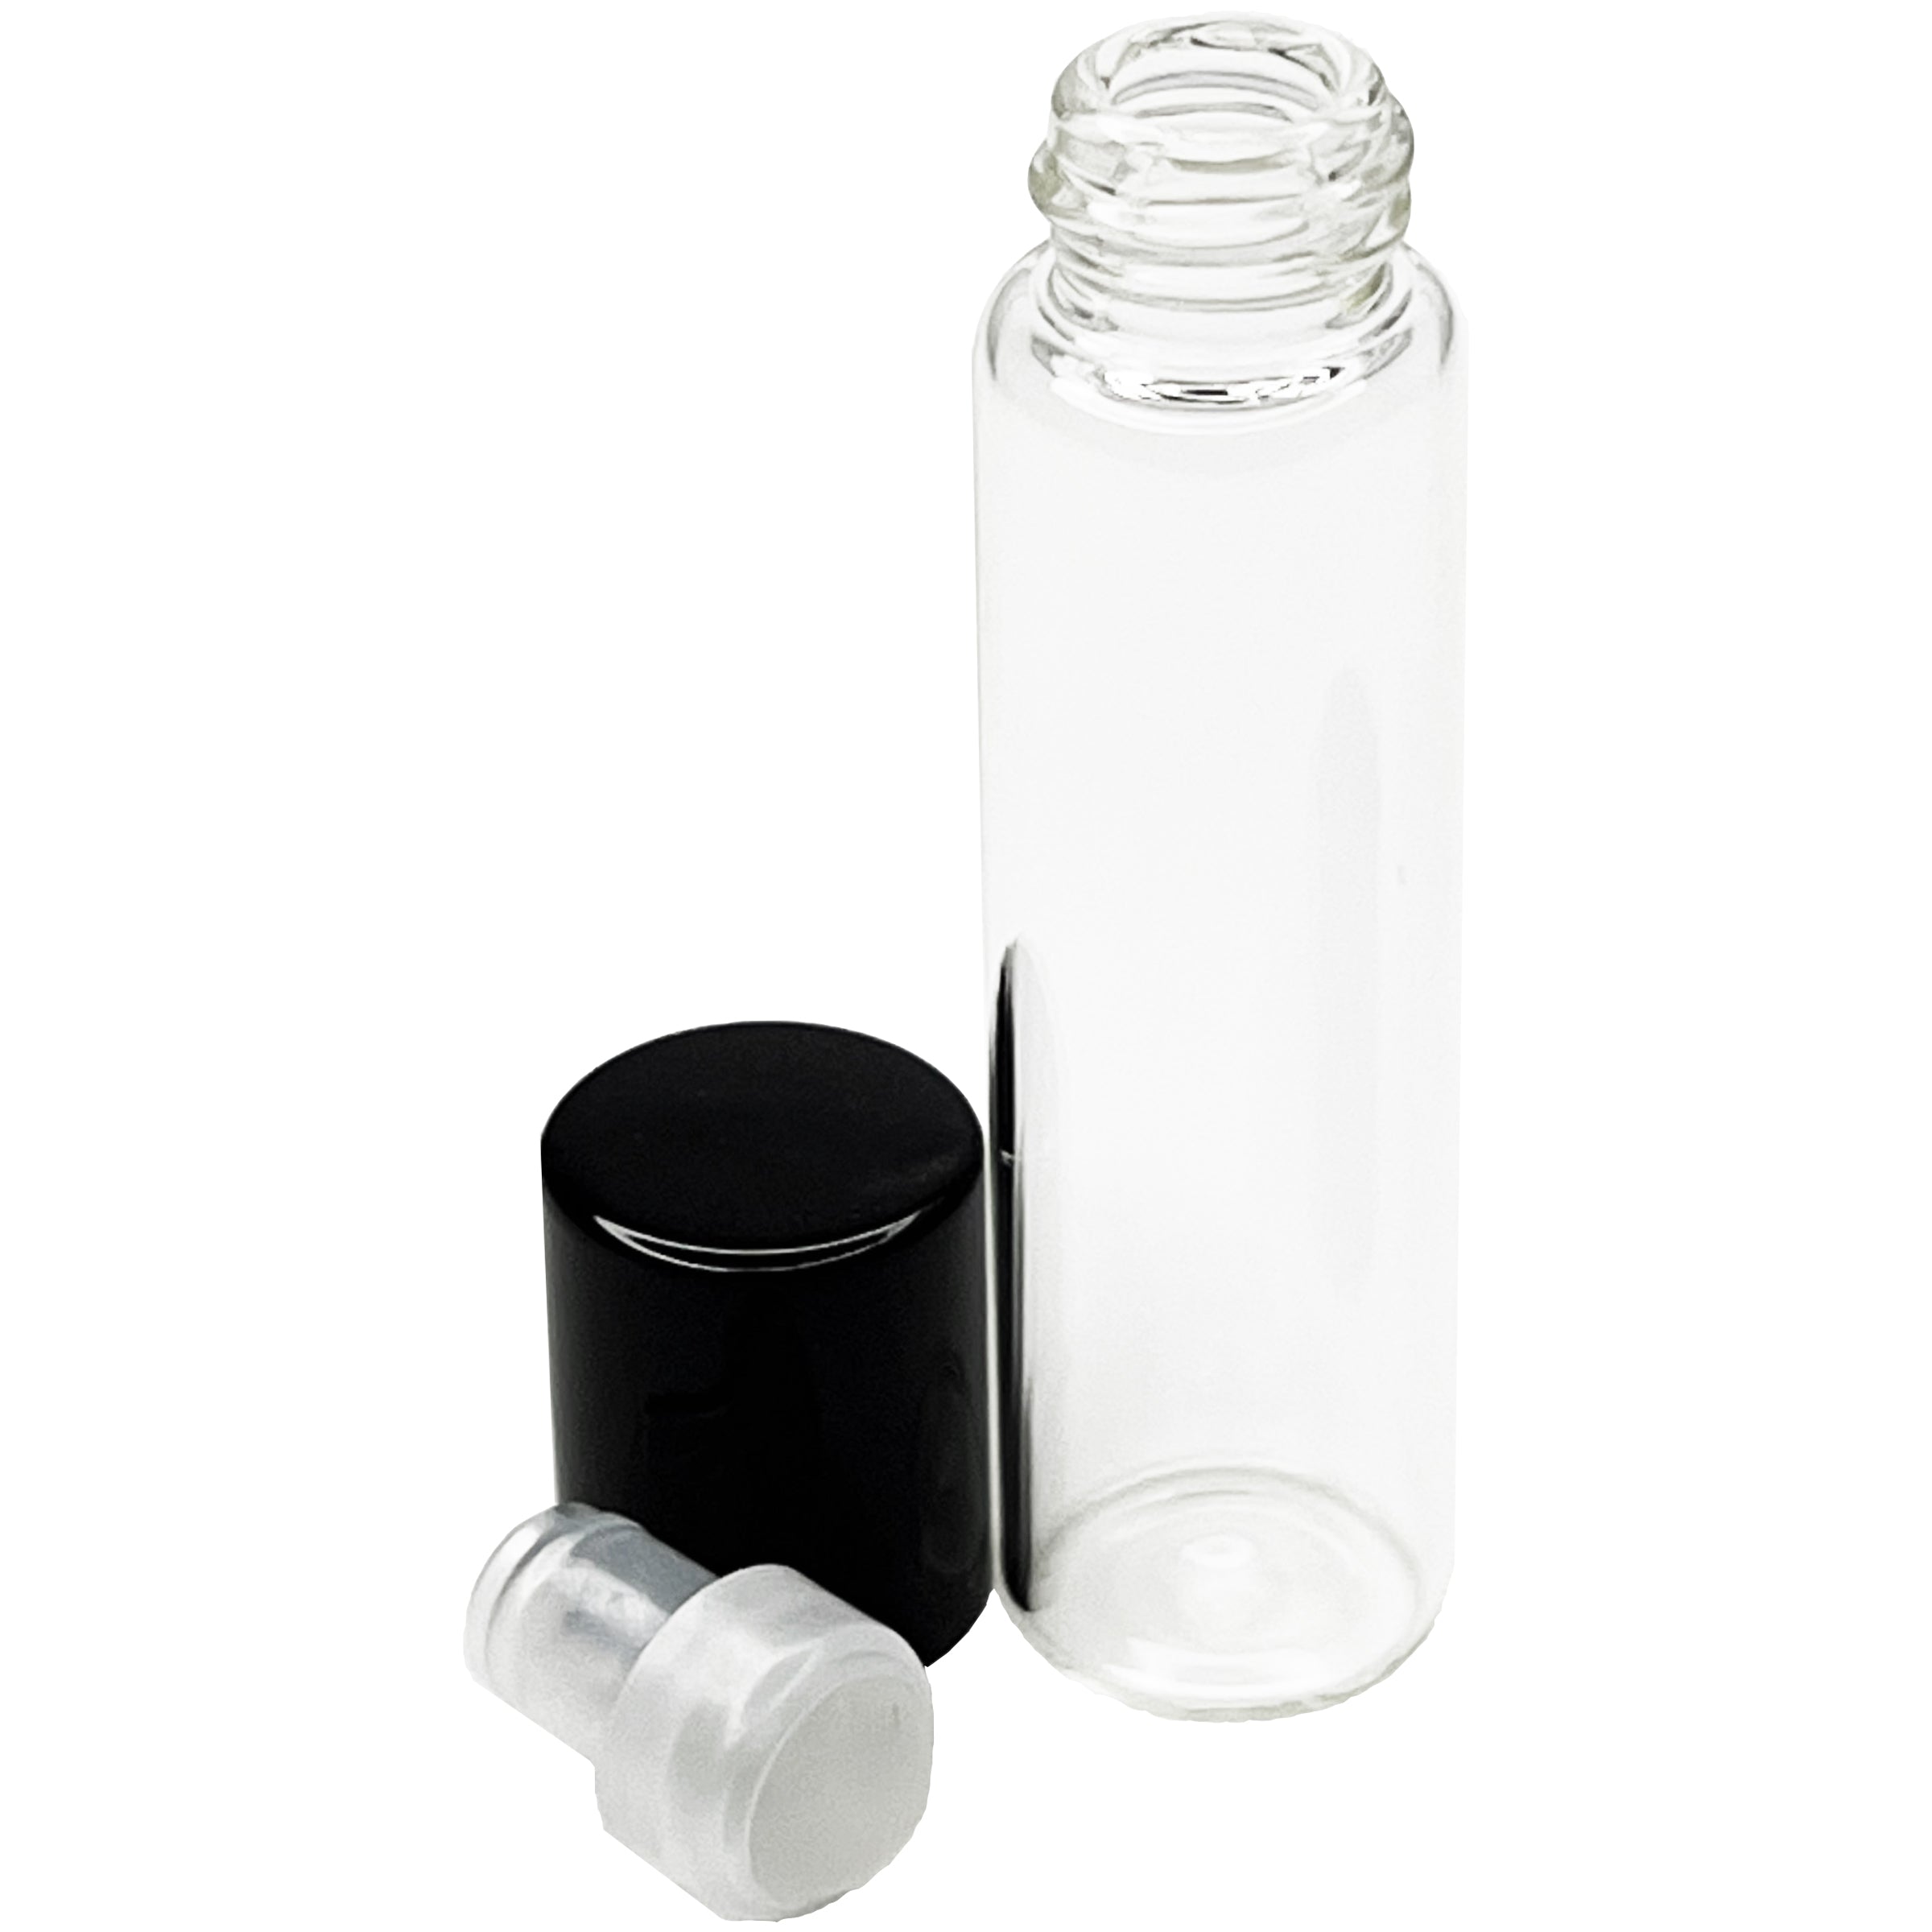 6ml 0.2oz glass tube roll on roller bottles for perfume oils